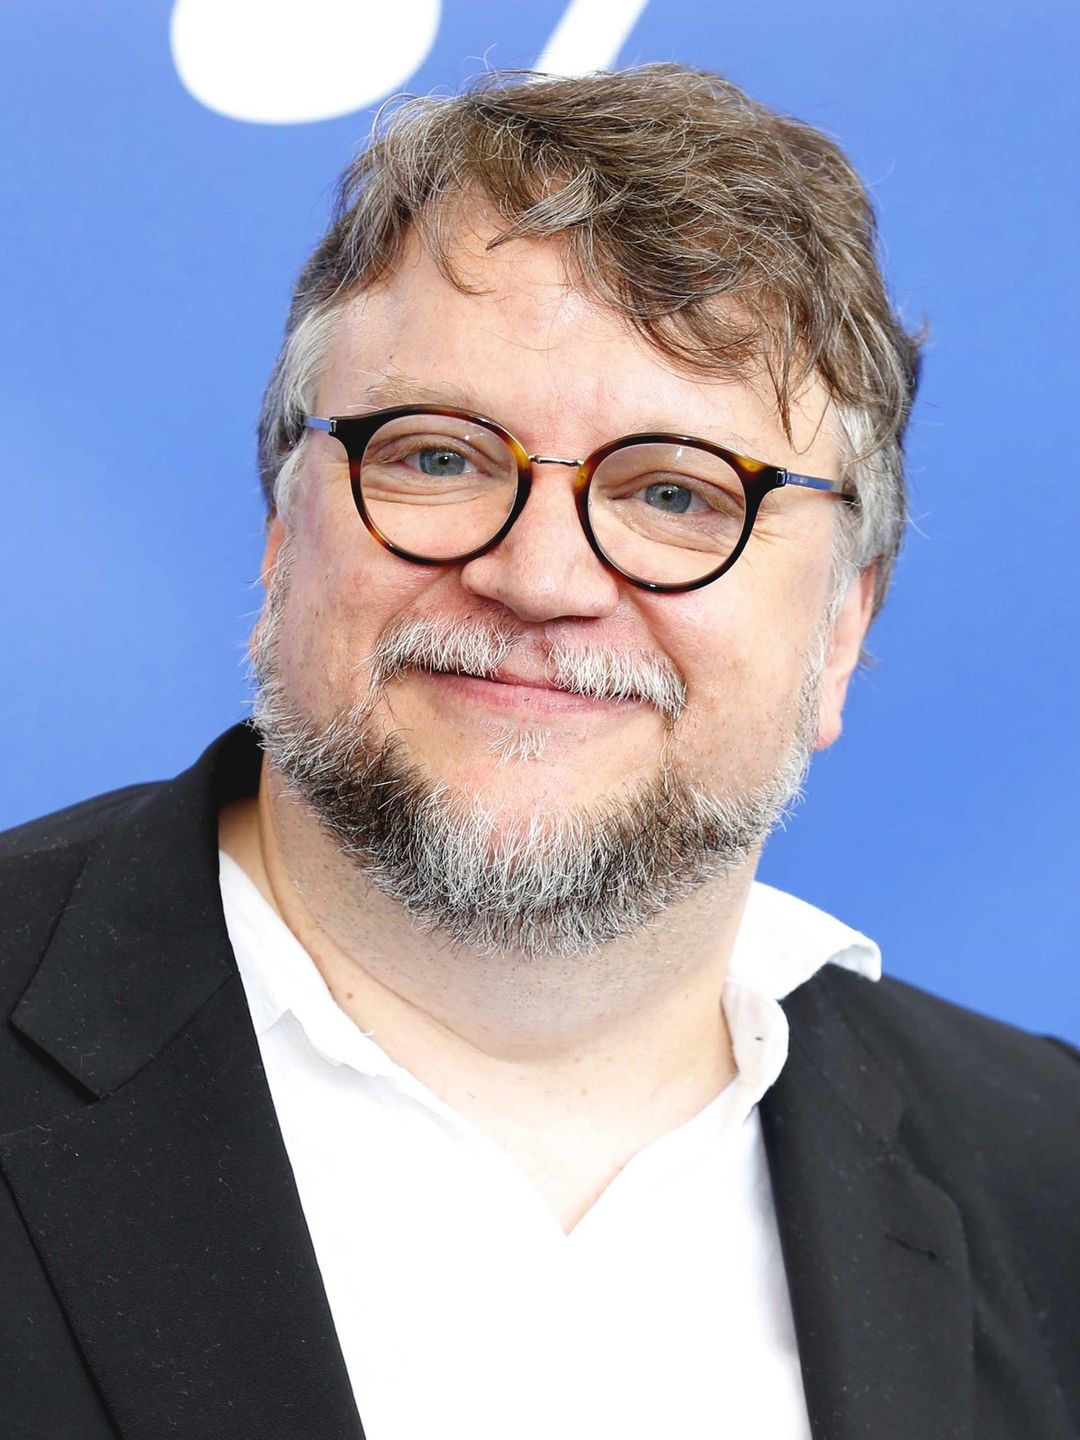 Guillermo del Toro story of success